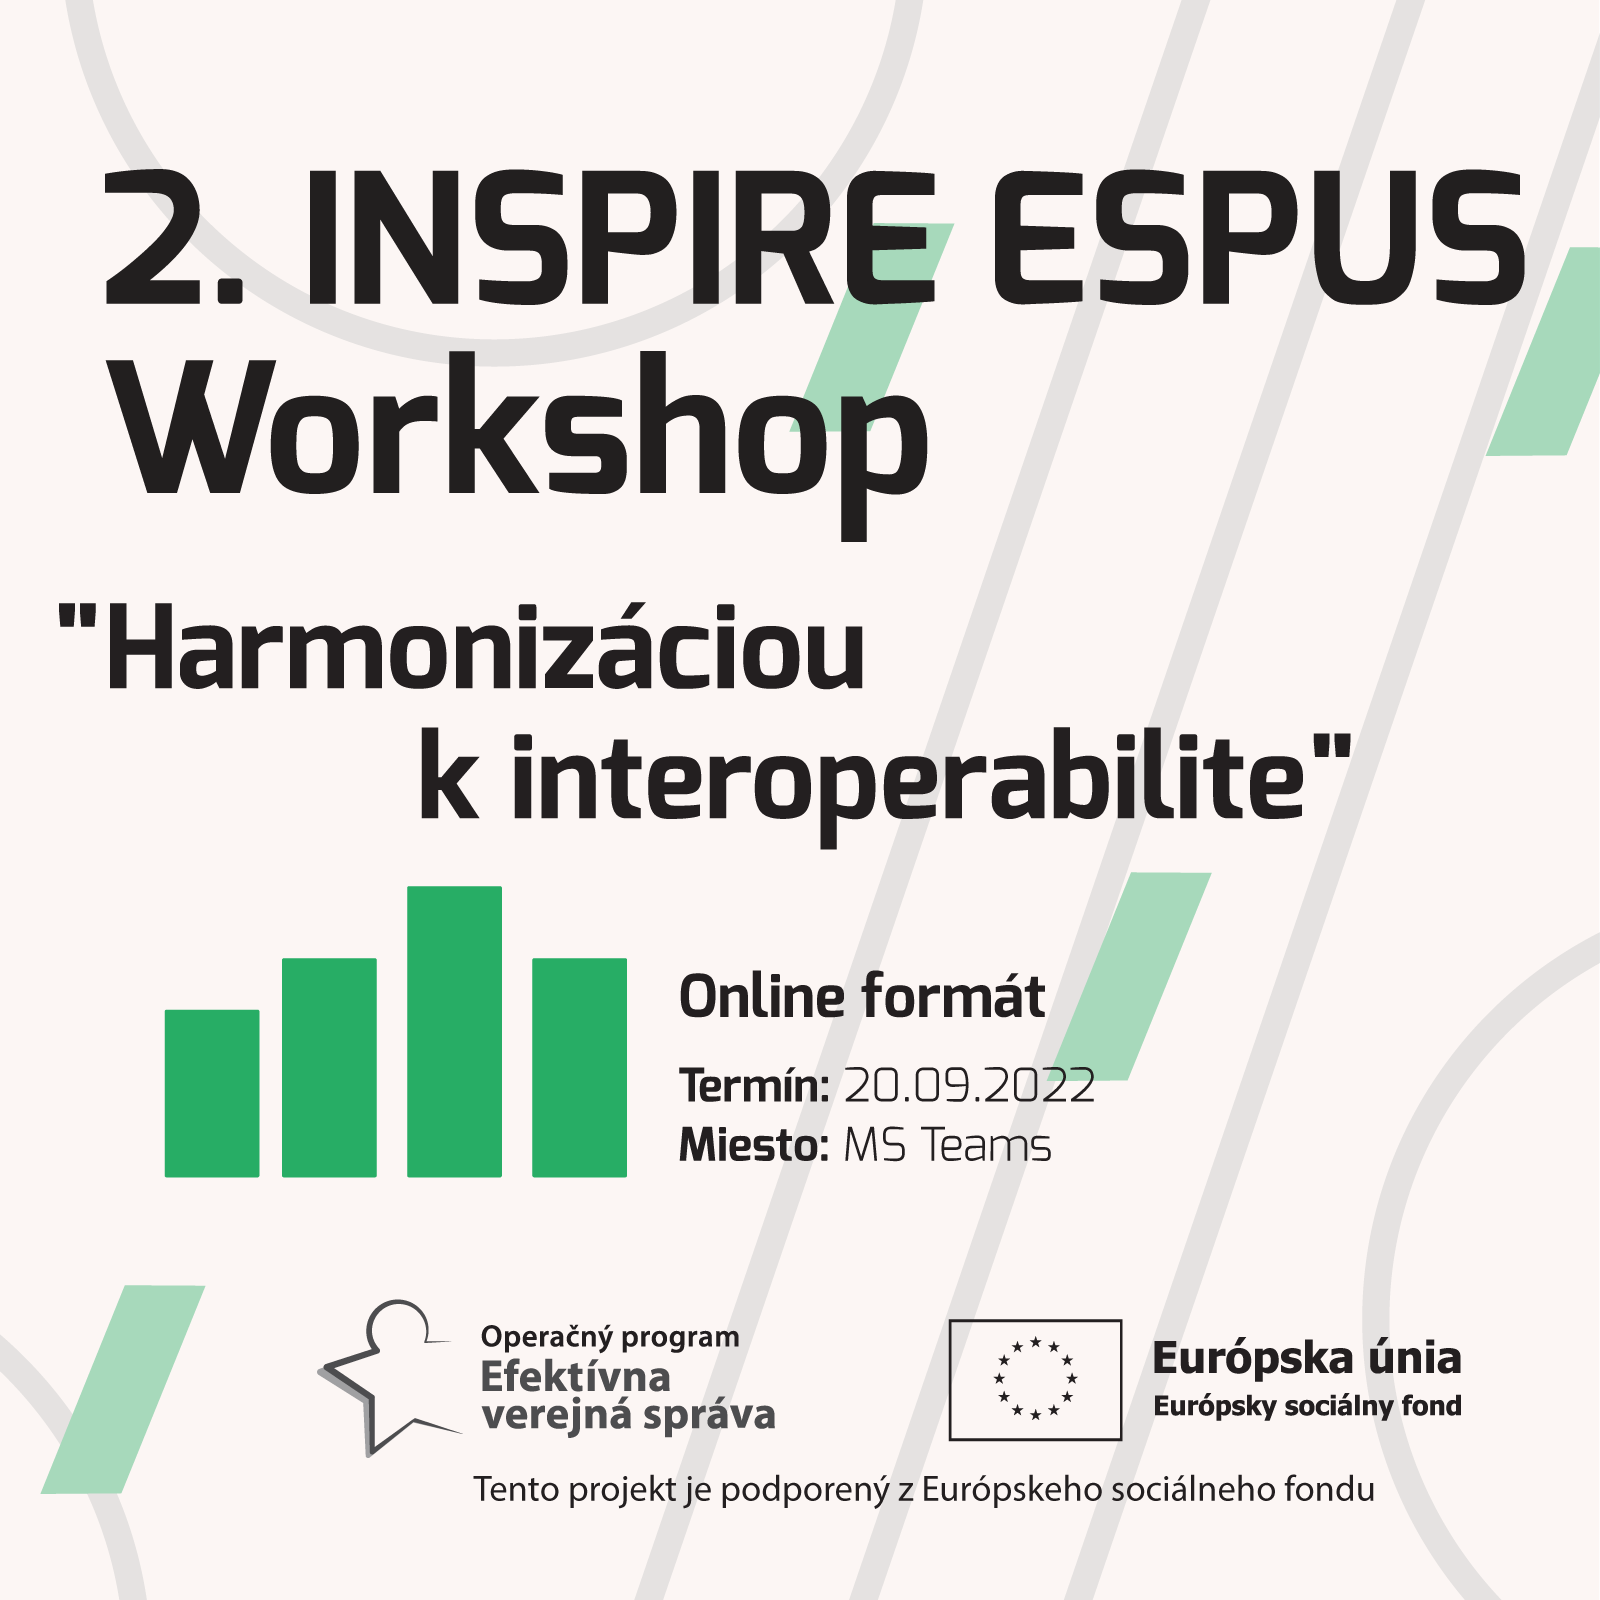 Ministerstvo životného prostredia SR organizovalo 20.09.2022 2.workshop v rámci projektu ESPUS: Harmonizáciou k interoperabilite. Príspevok poskytuje výstupy z tohto podujatia.